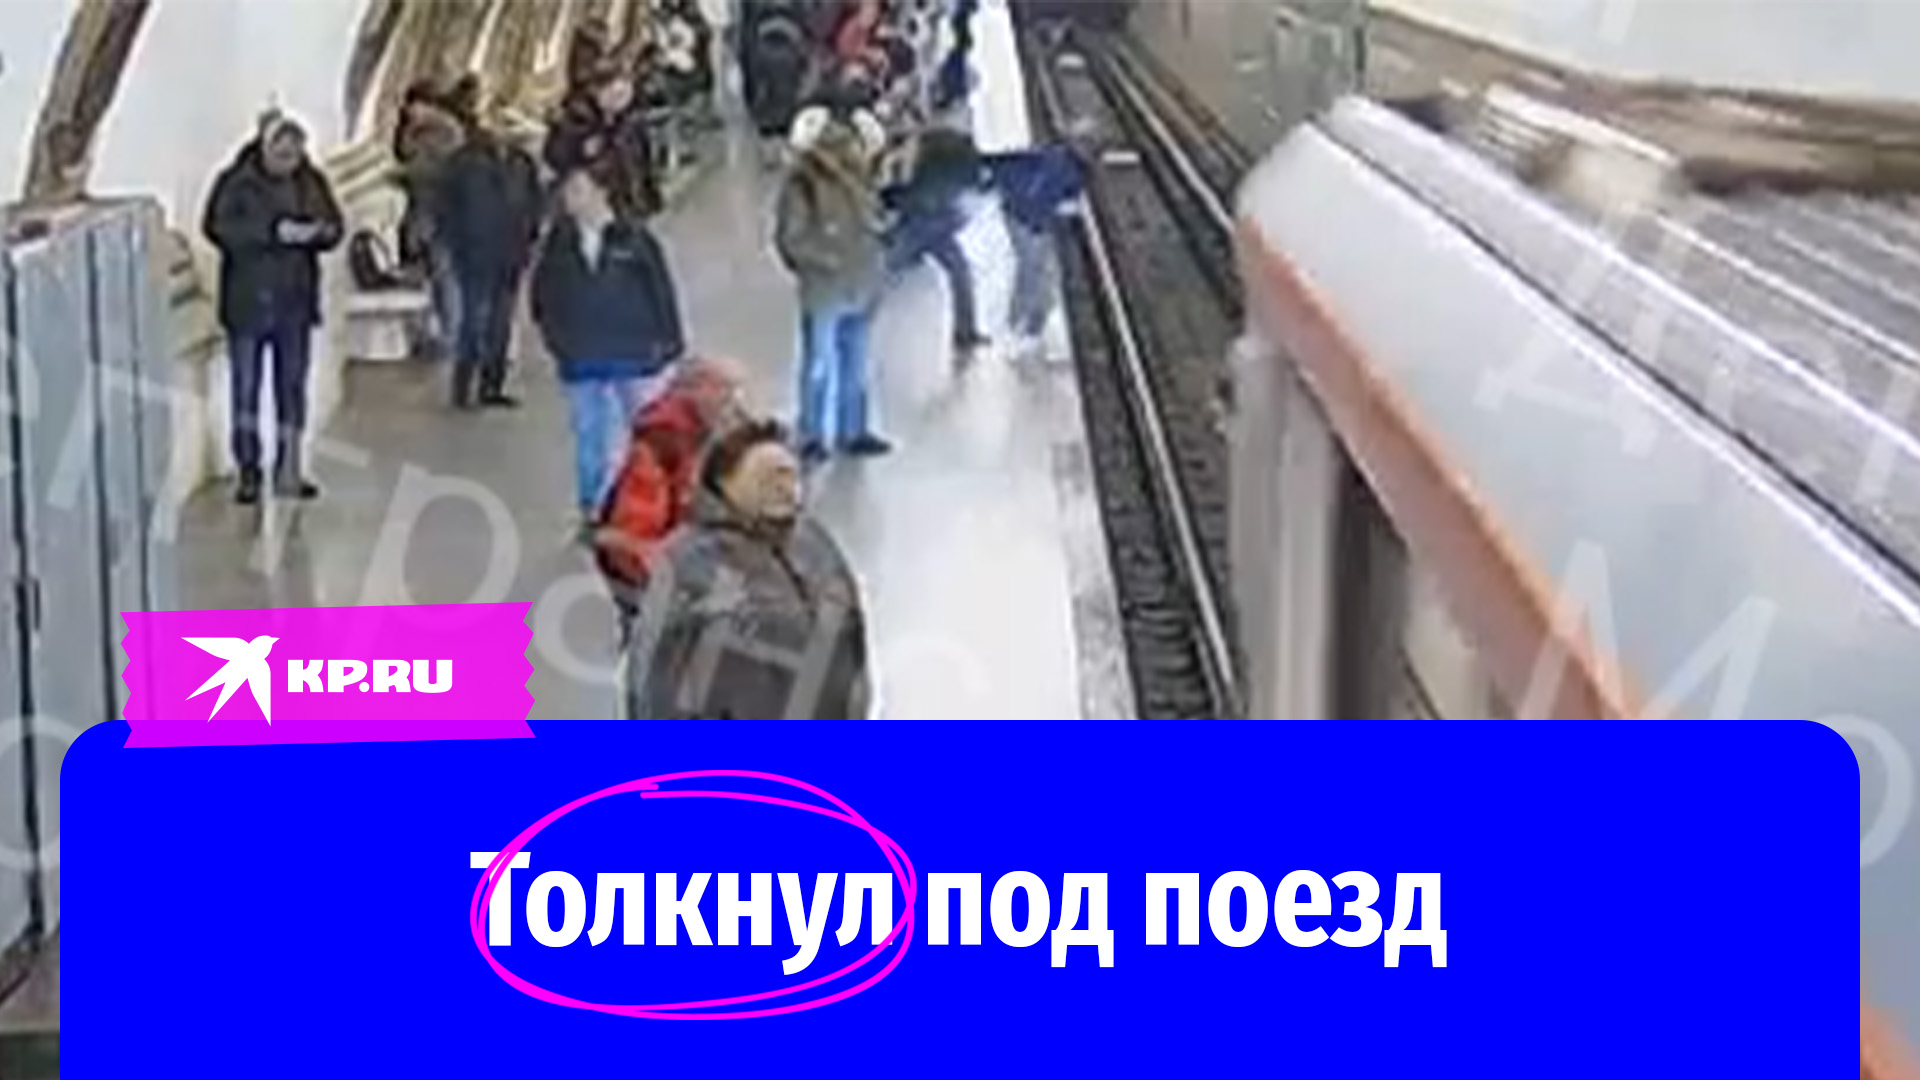 Мужчина столкнул под поезд. Столкнул под поезд в метро. Мужчина столкнул в метро. Мальчика толкнули в метро.